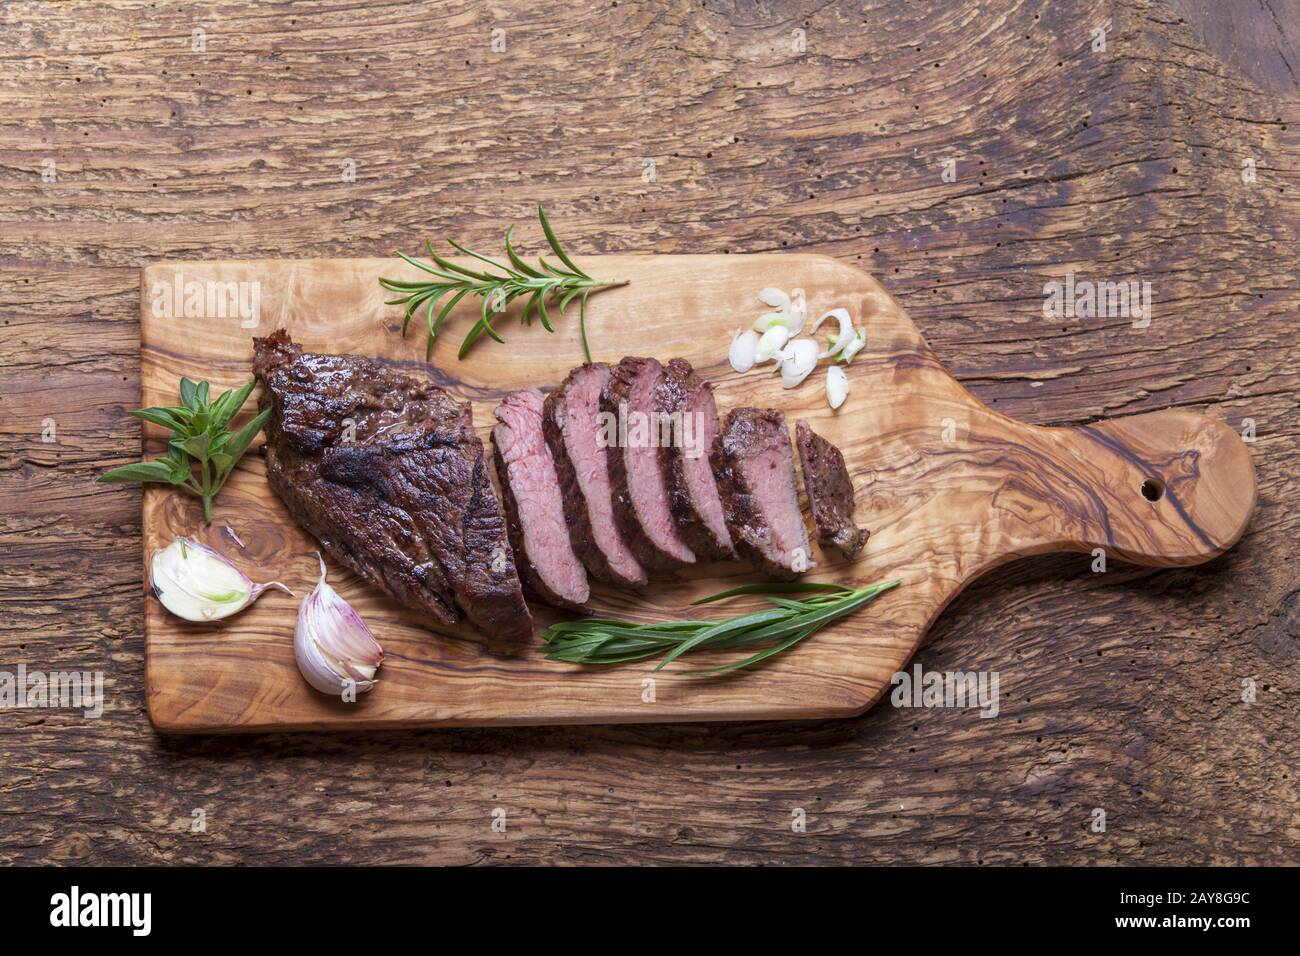 Le steak grillé sur bois Banque D'Images